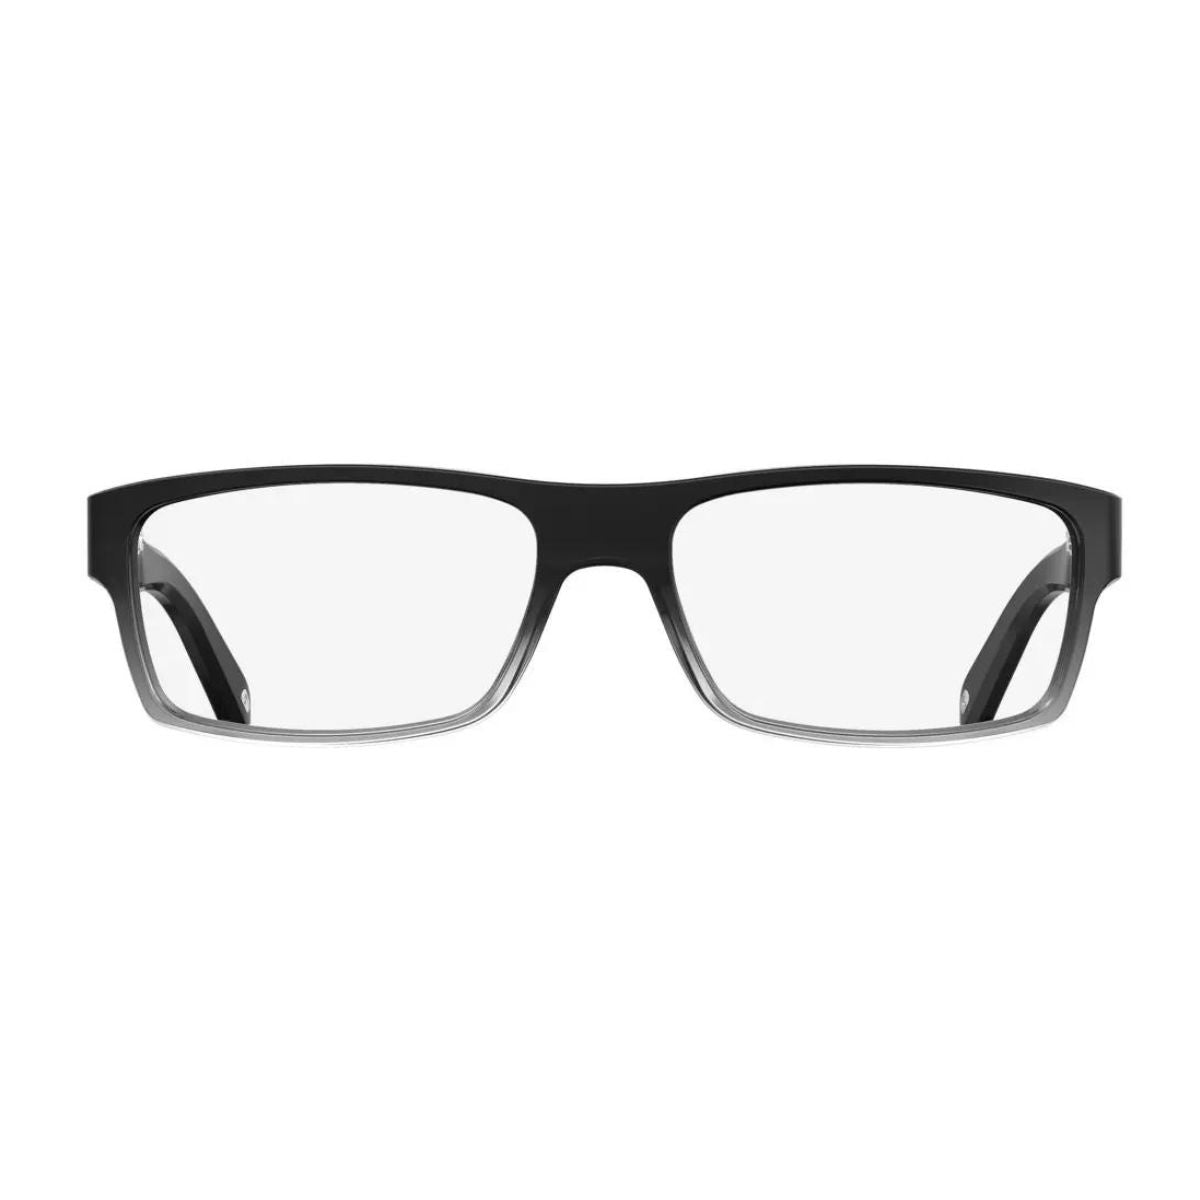 "Carrera 6180 2MO optical eyewear frame for men's and women's online at optorium"